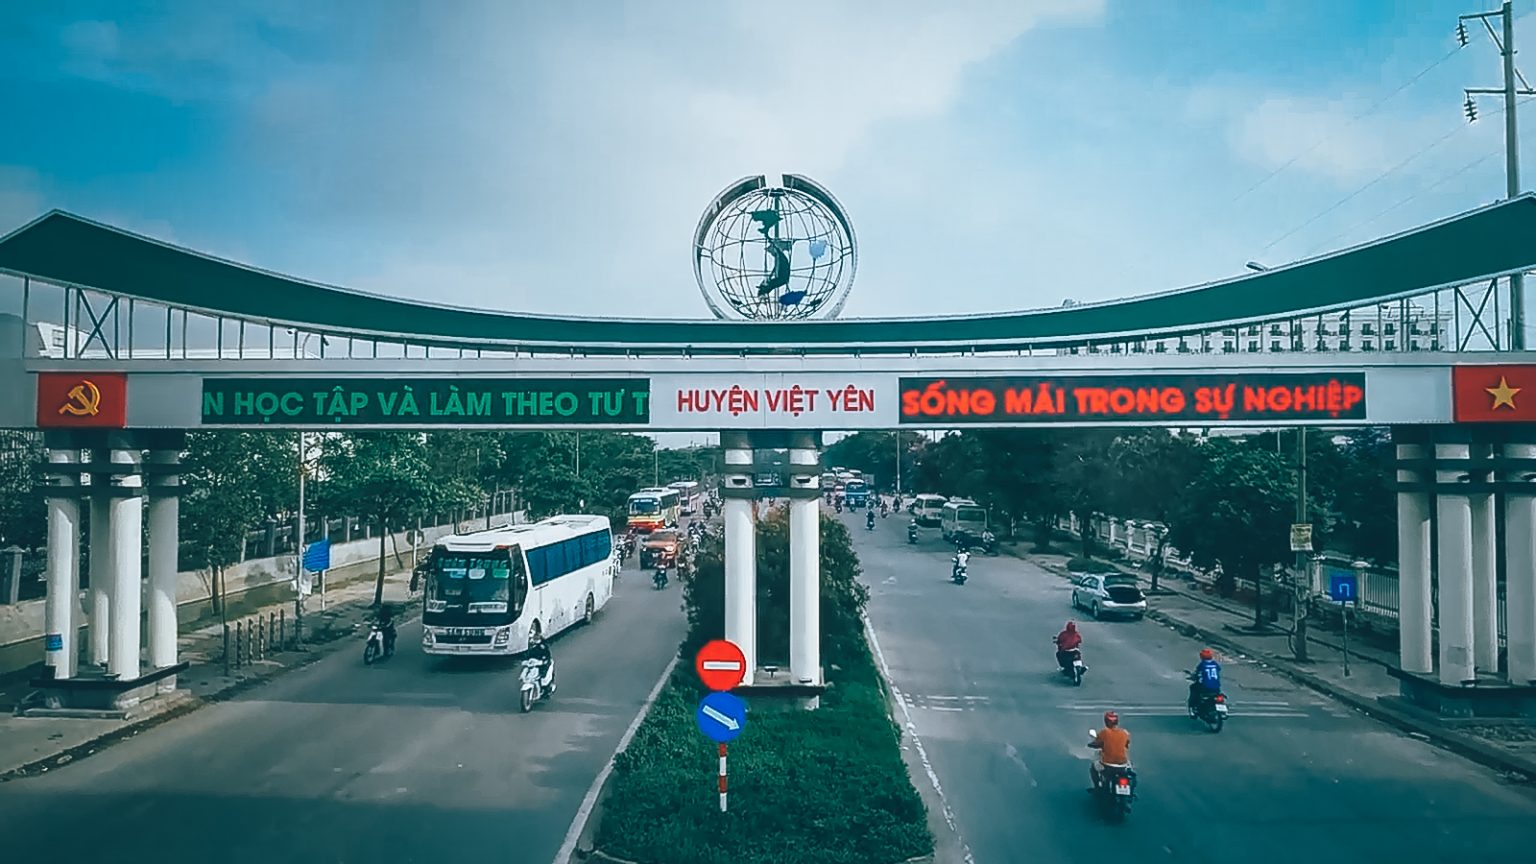 Sửa chữa tivi tại Thành phố Bắc Giang